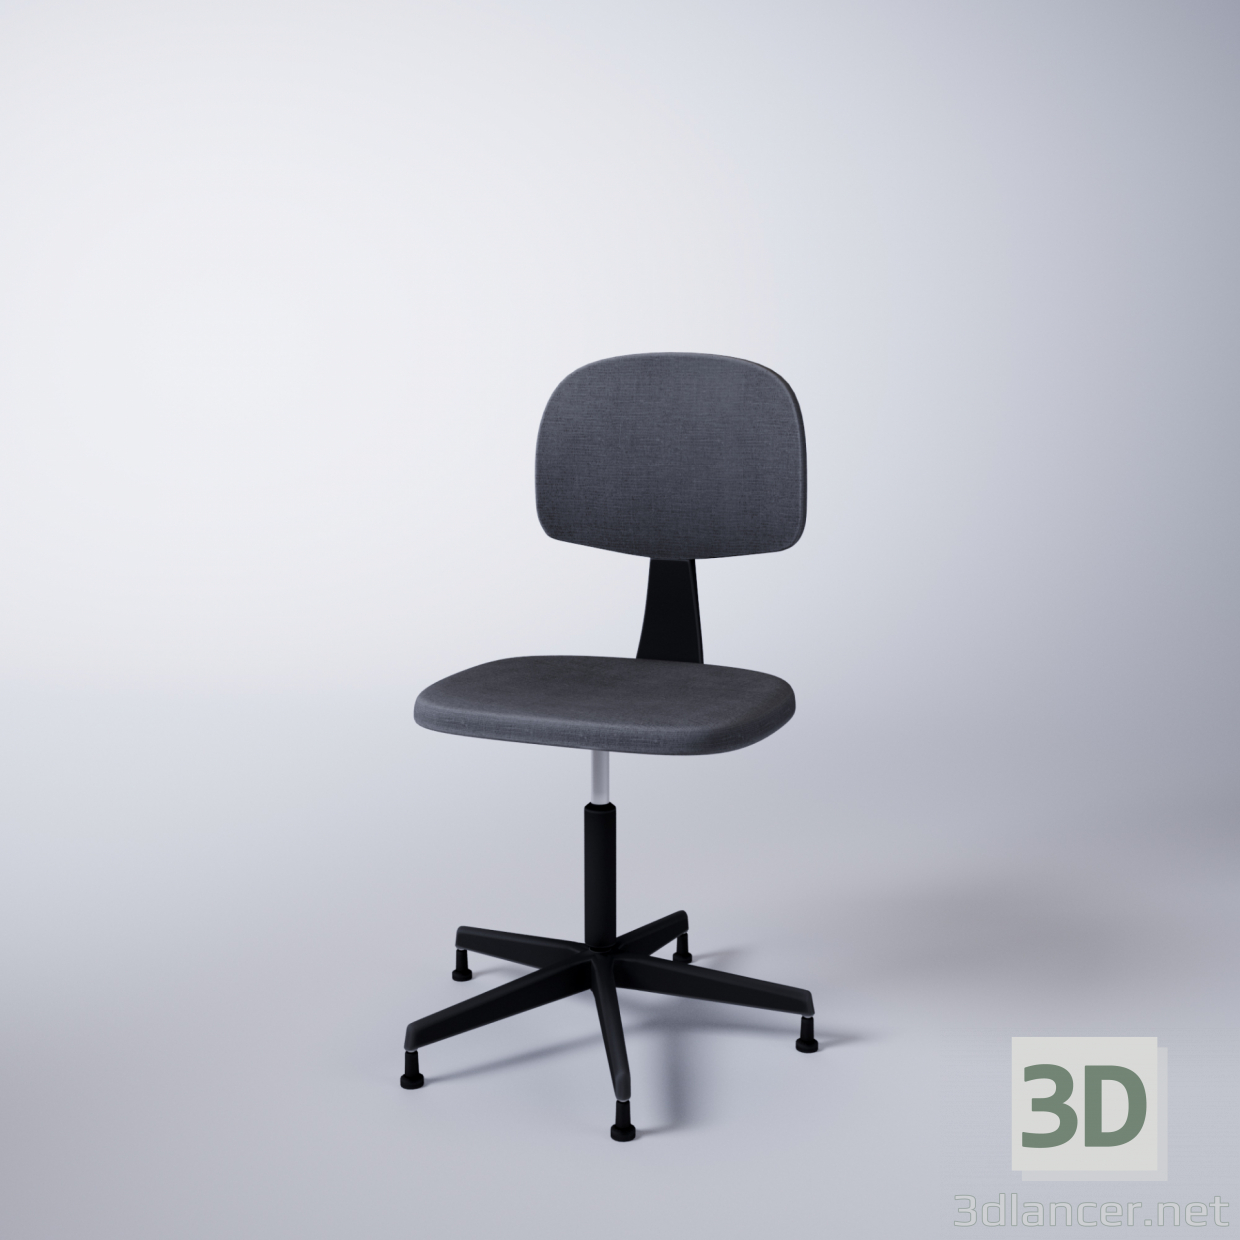 Computerstuhl 3D-Modell kaufen - Rendern